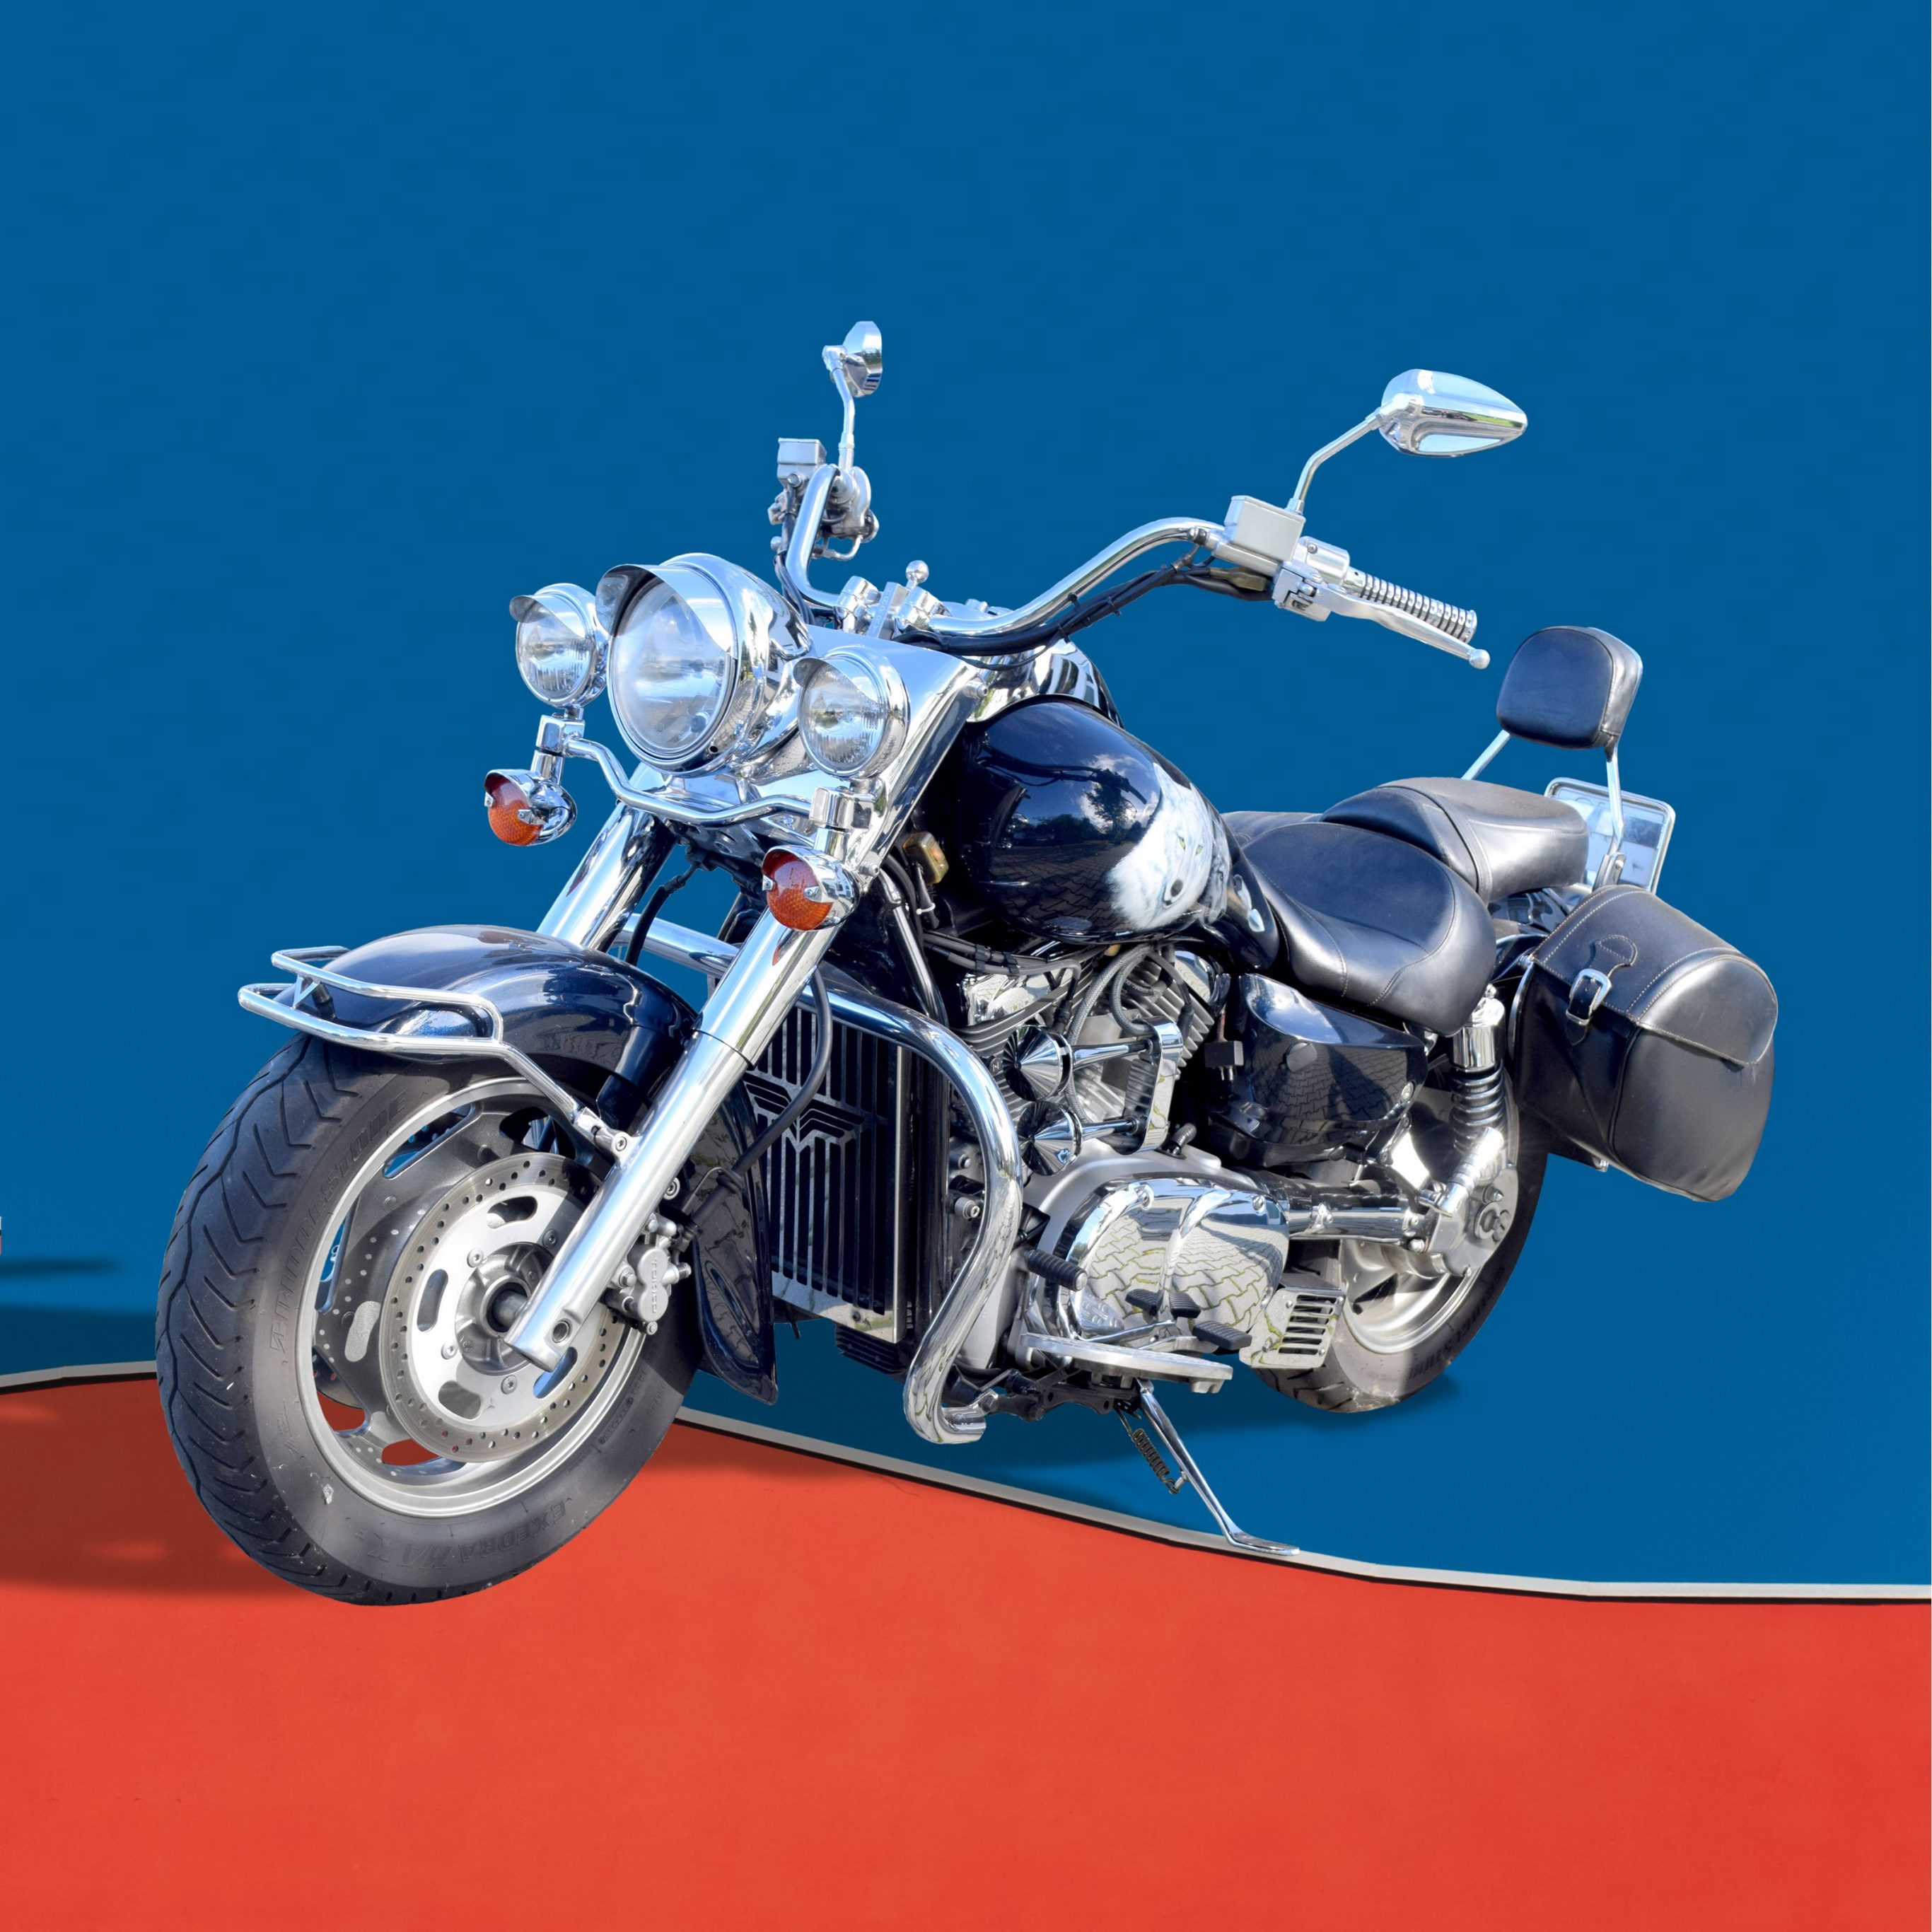 2732x2732 wallpapers 4k iPad Pro Motorbike Blue Dividing Red Ipad Wallpaper 2732x2732 pixels resolution